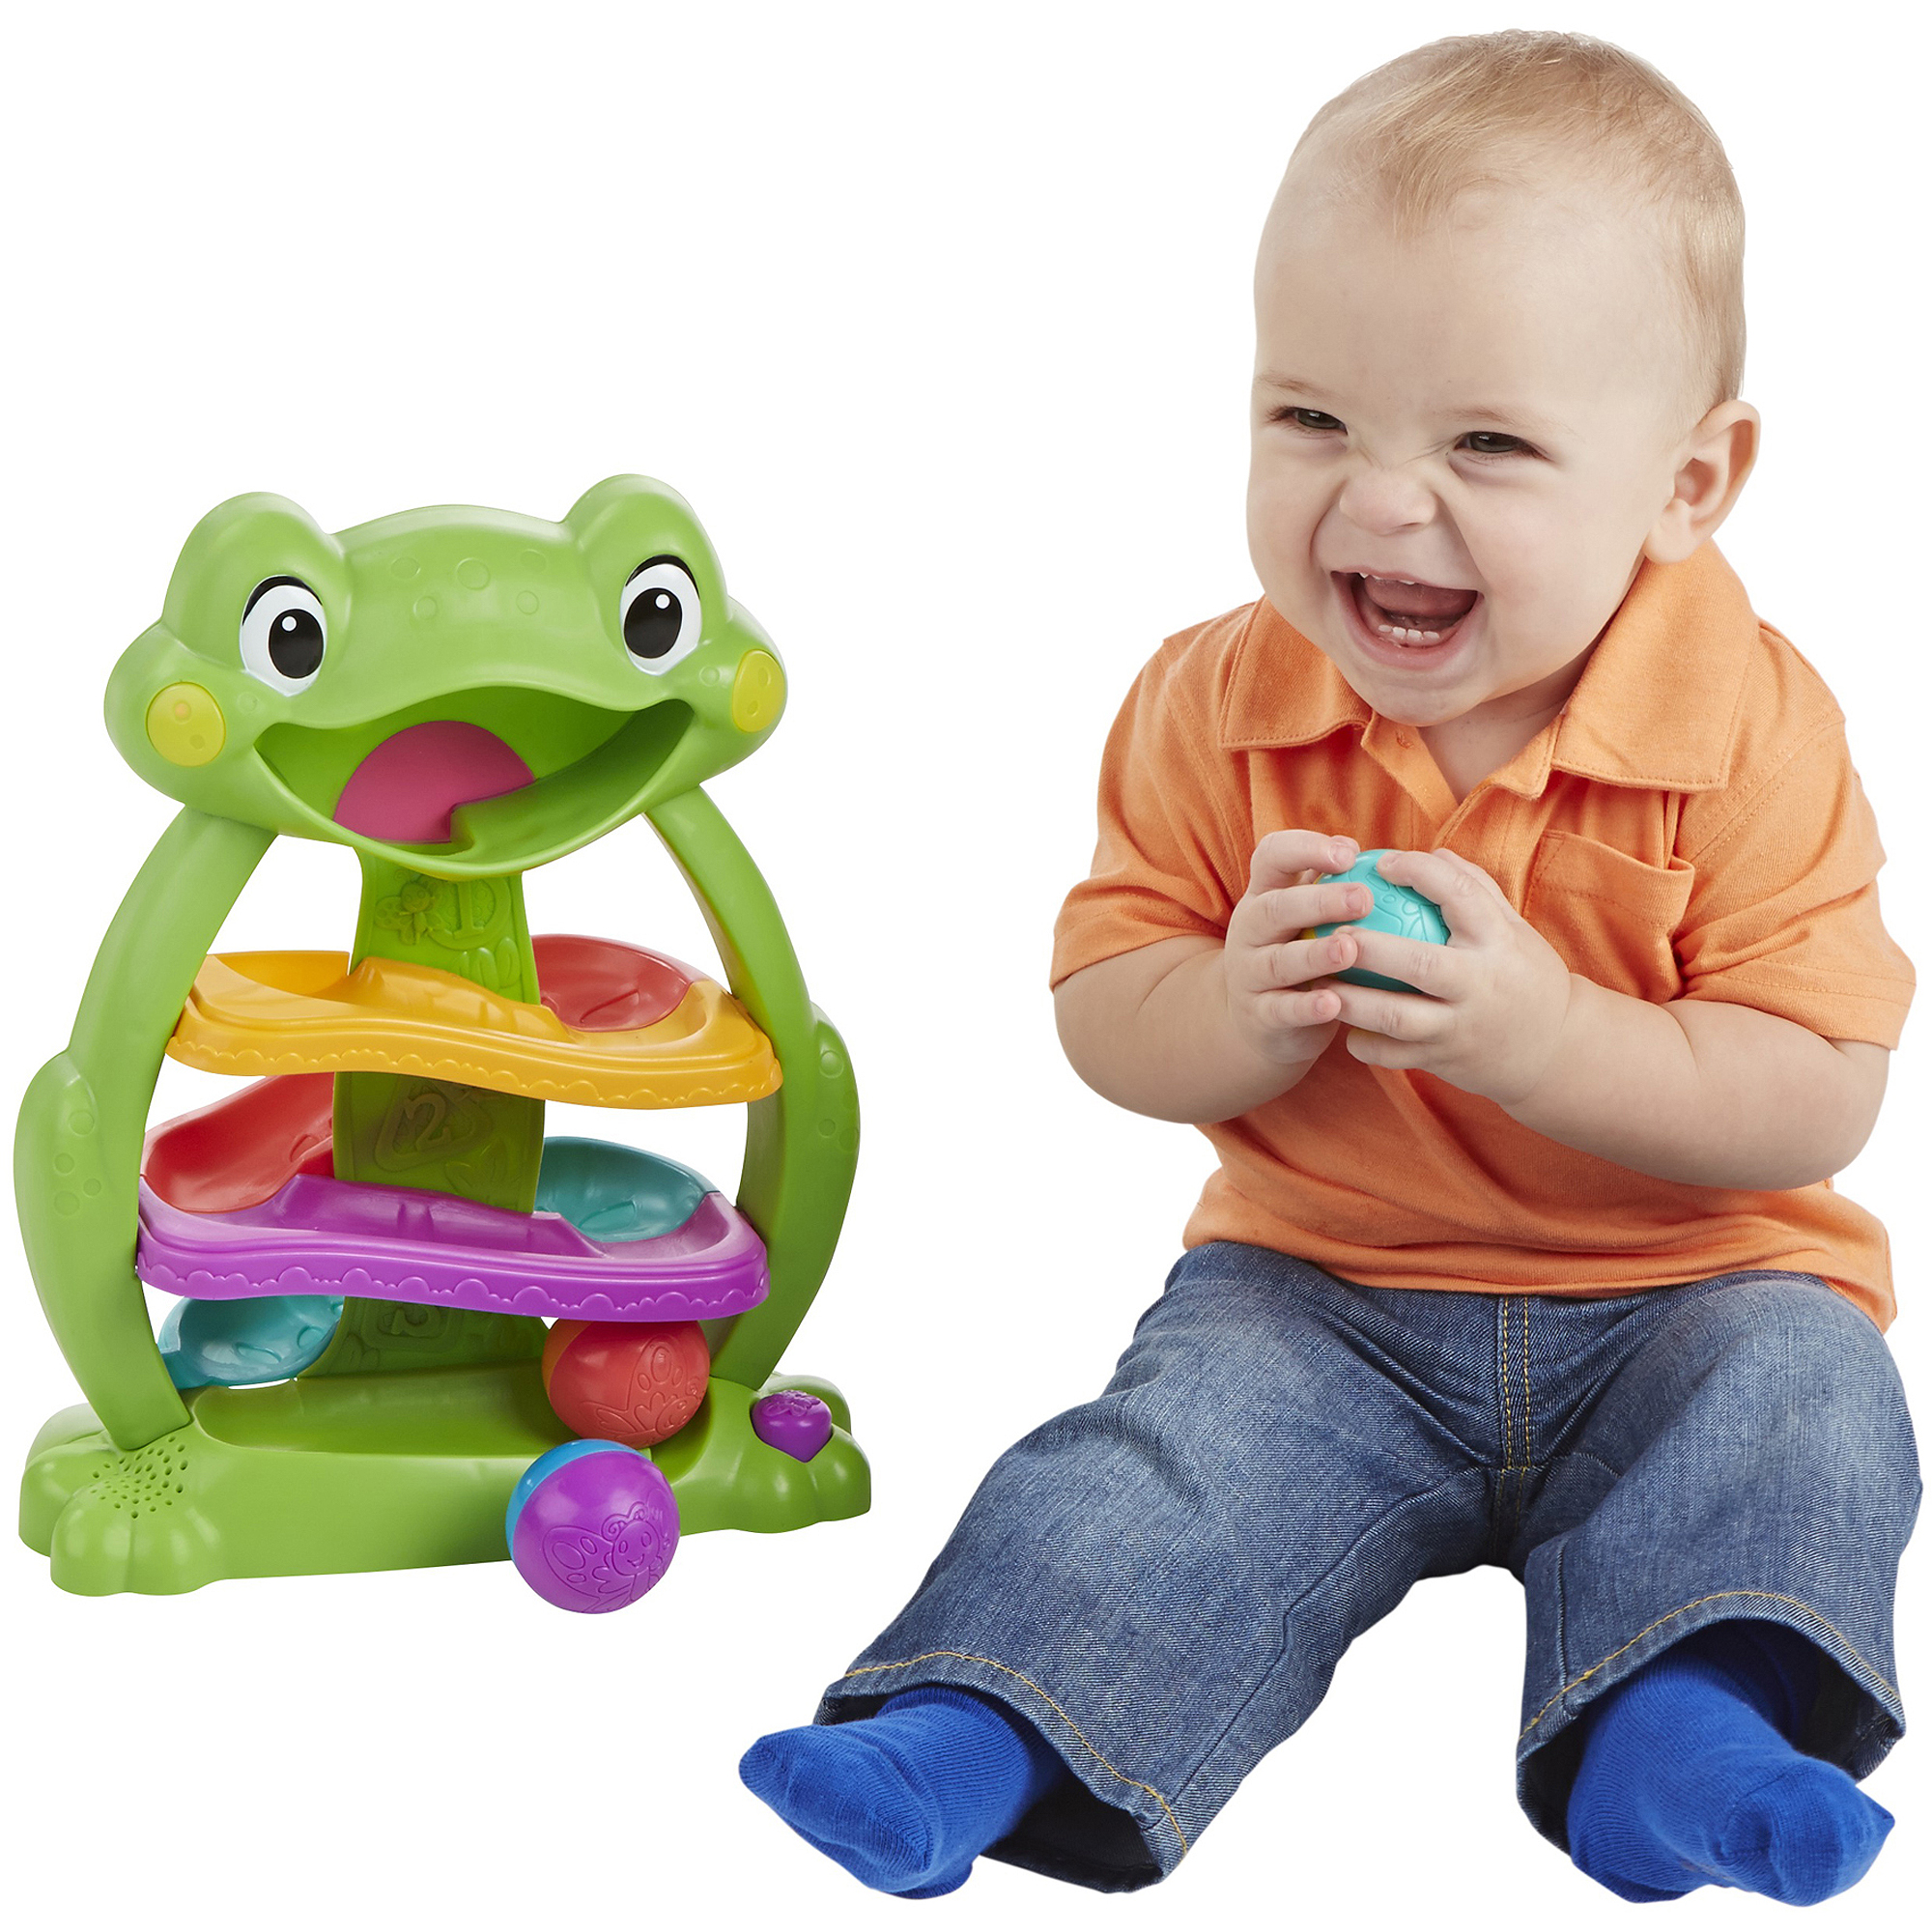 Playskool Tumble 'n Glow Froggio Toy - image 5 of 10